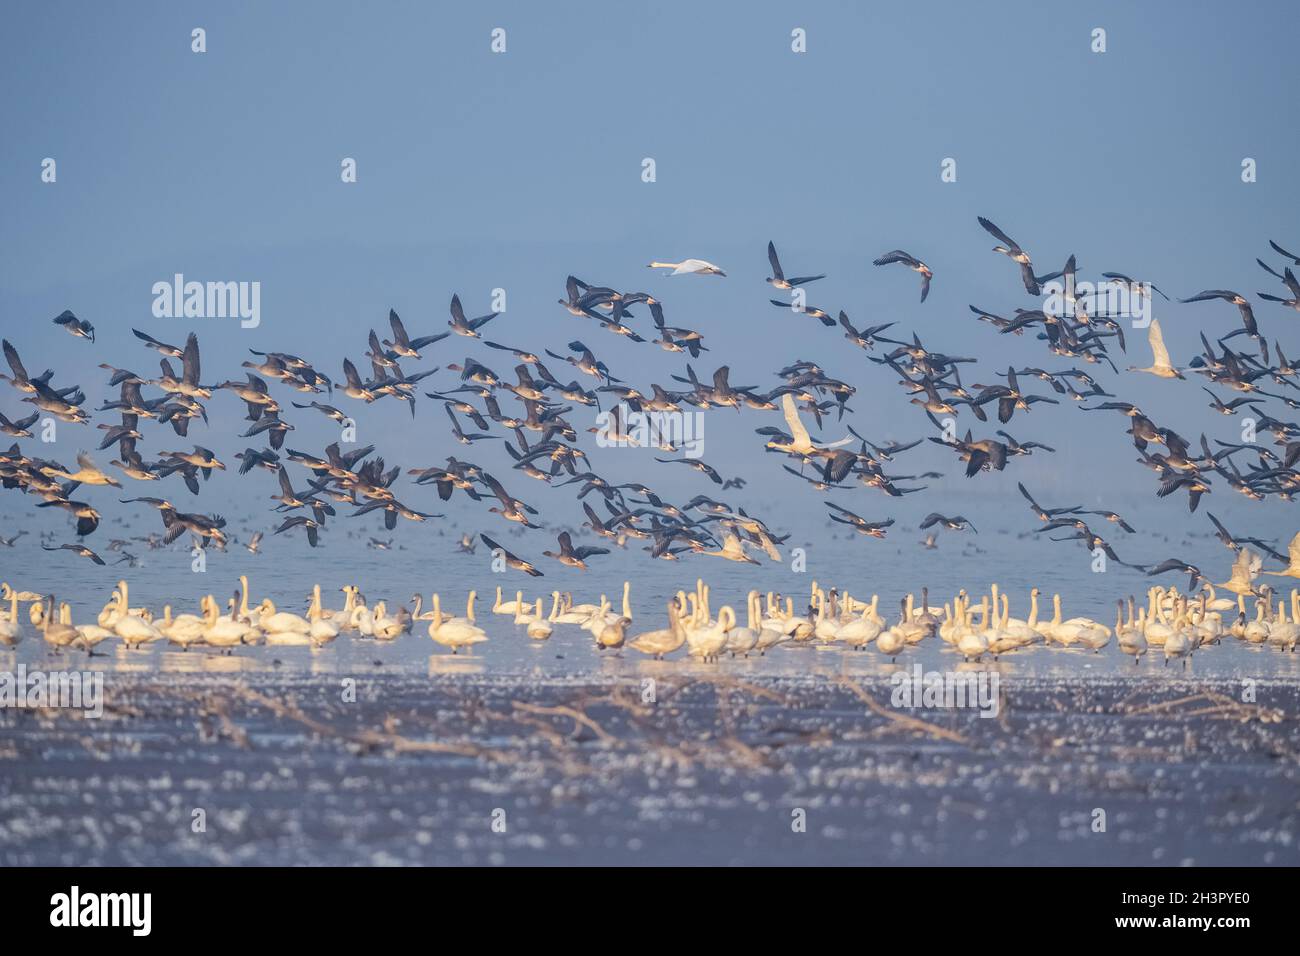 Flock of migratory birds scene Stock Photo